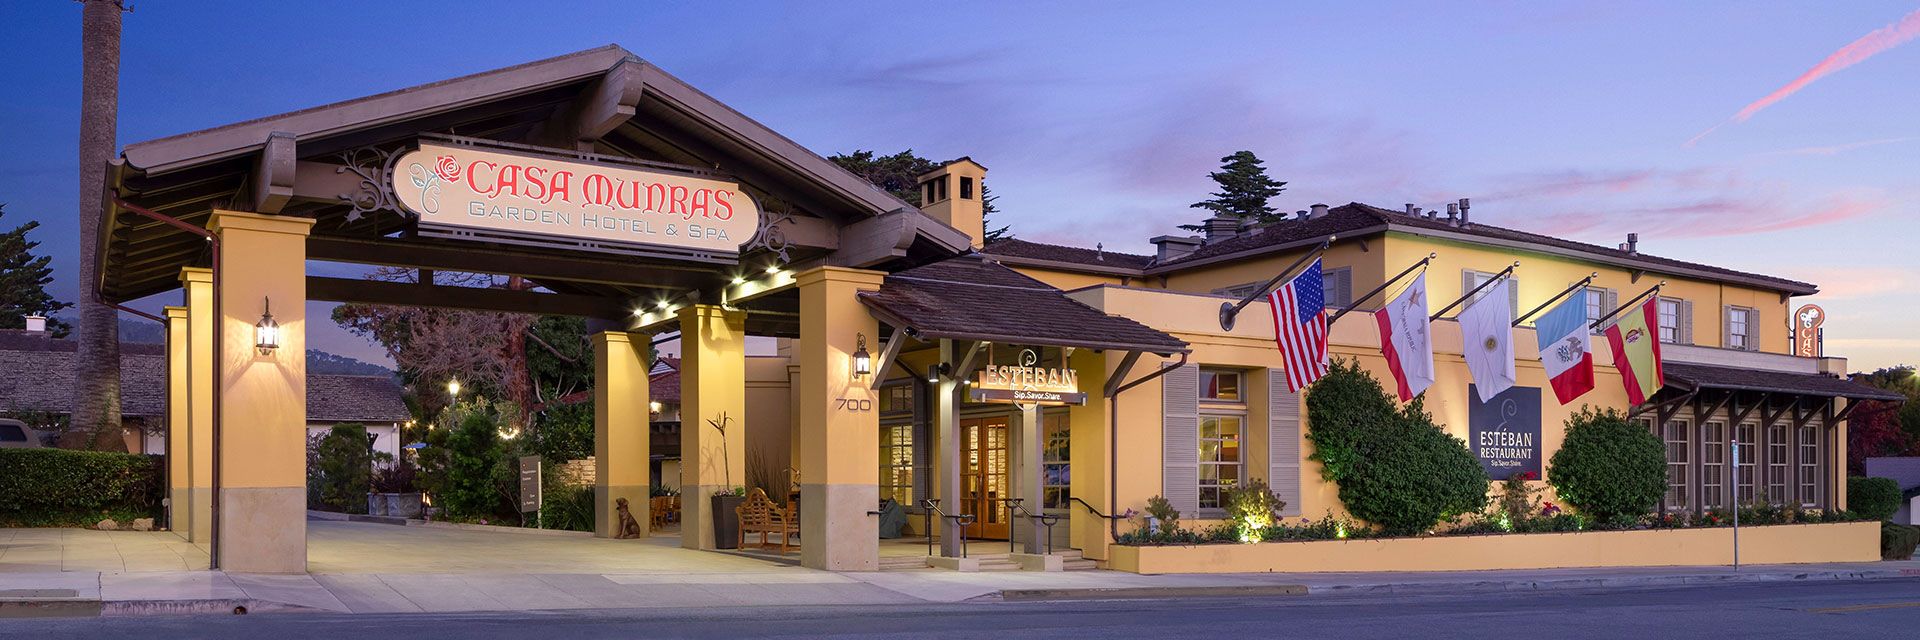 Know about Casa Munras Garden Hotel & Spa, Monterey